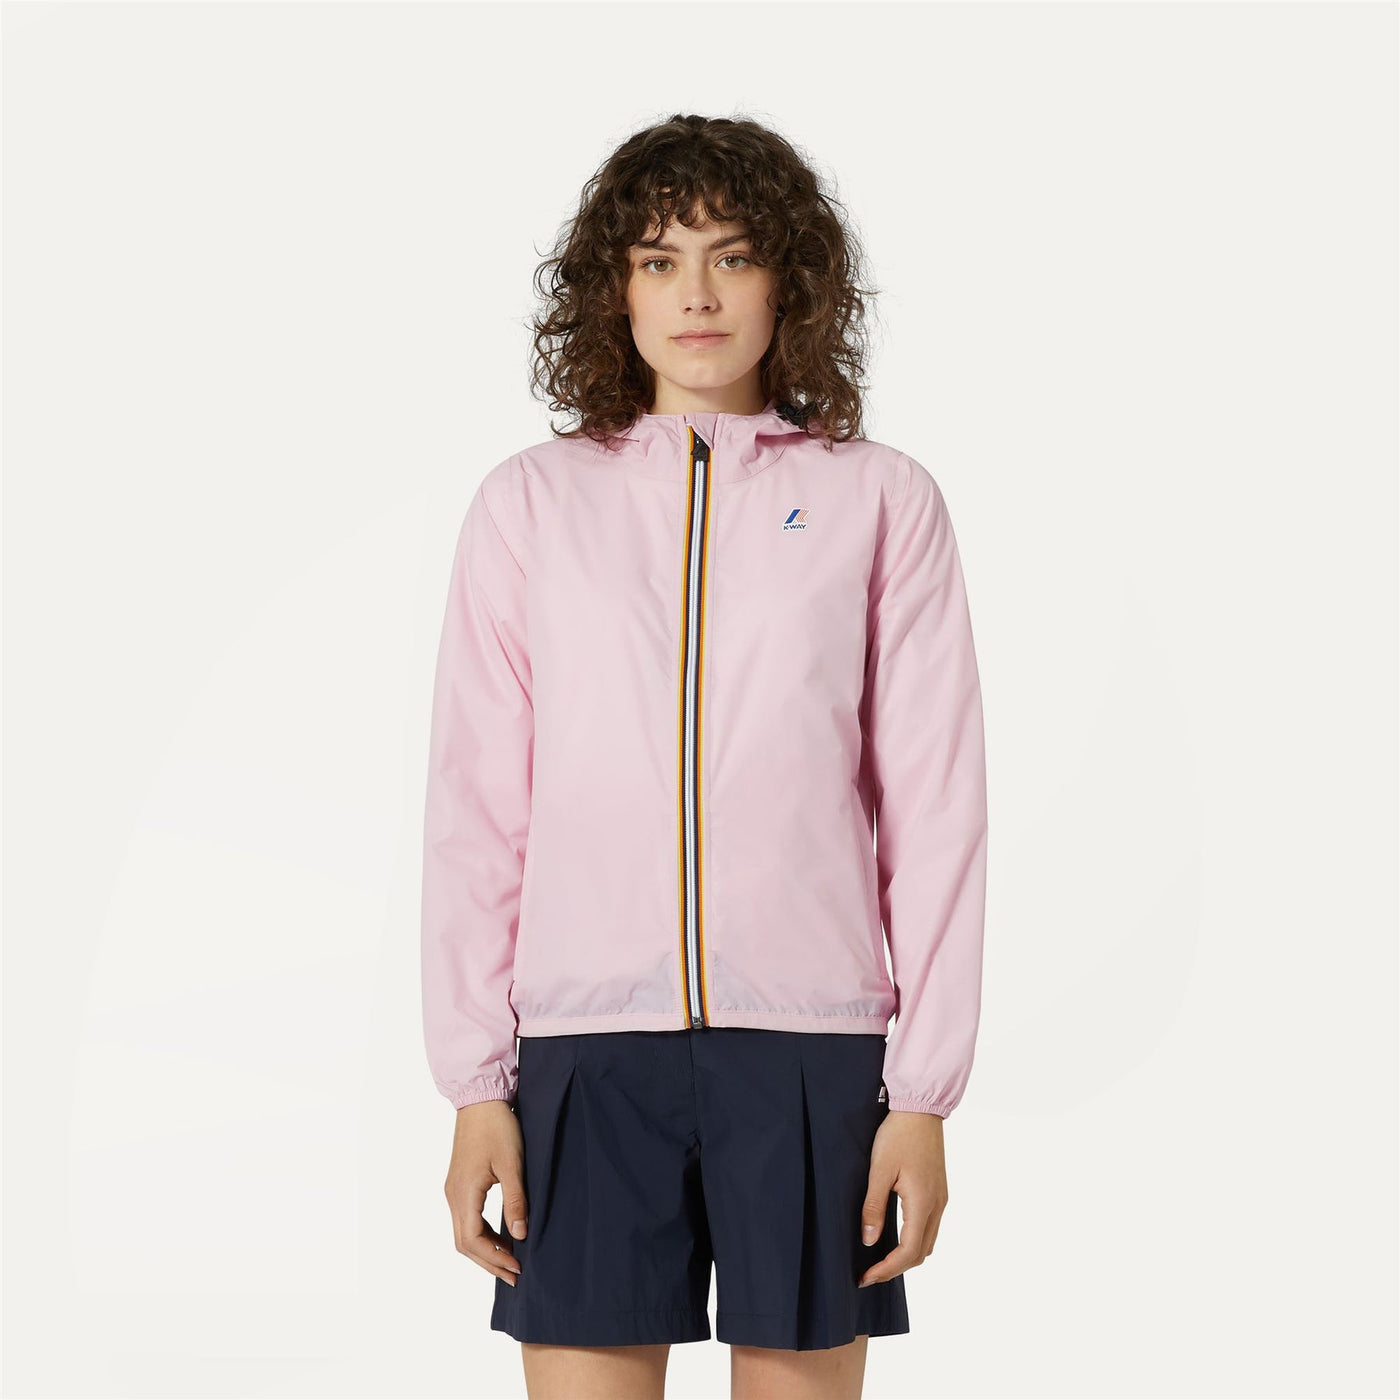 LE VRAI 3.0 Claudette - Jacket - Nylon - Woman - Pink Md